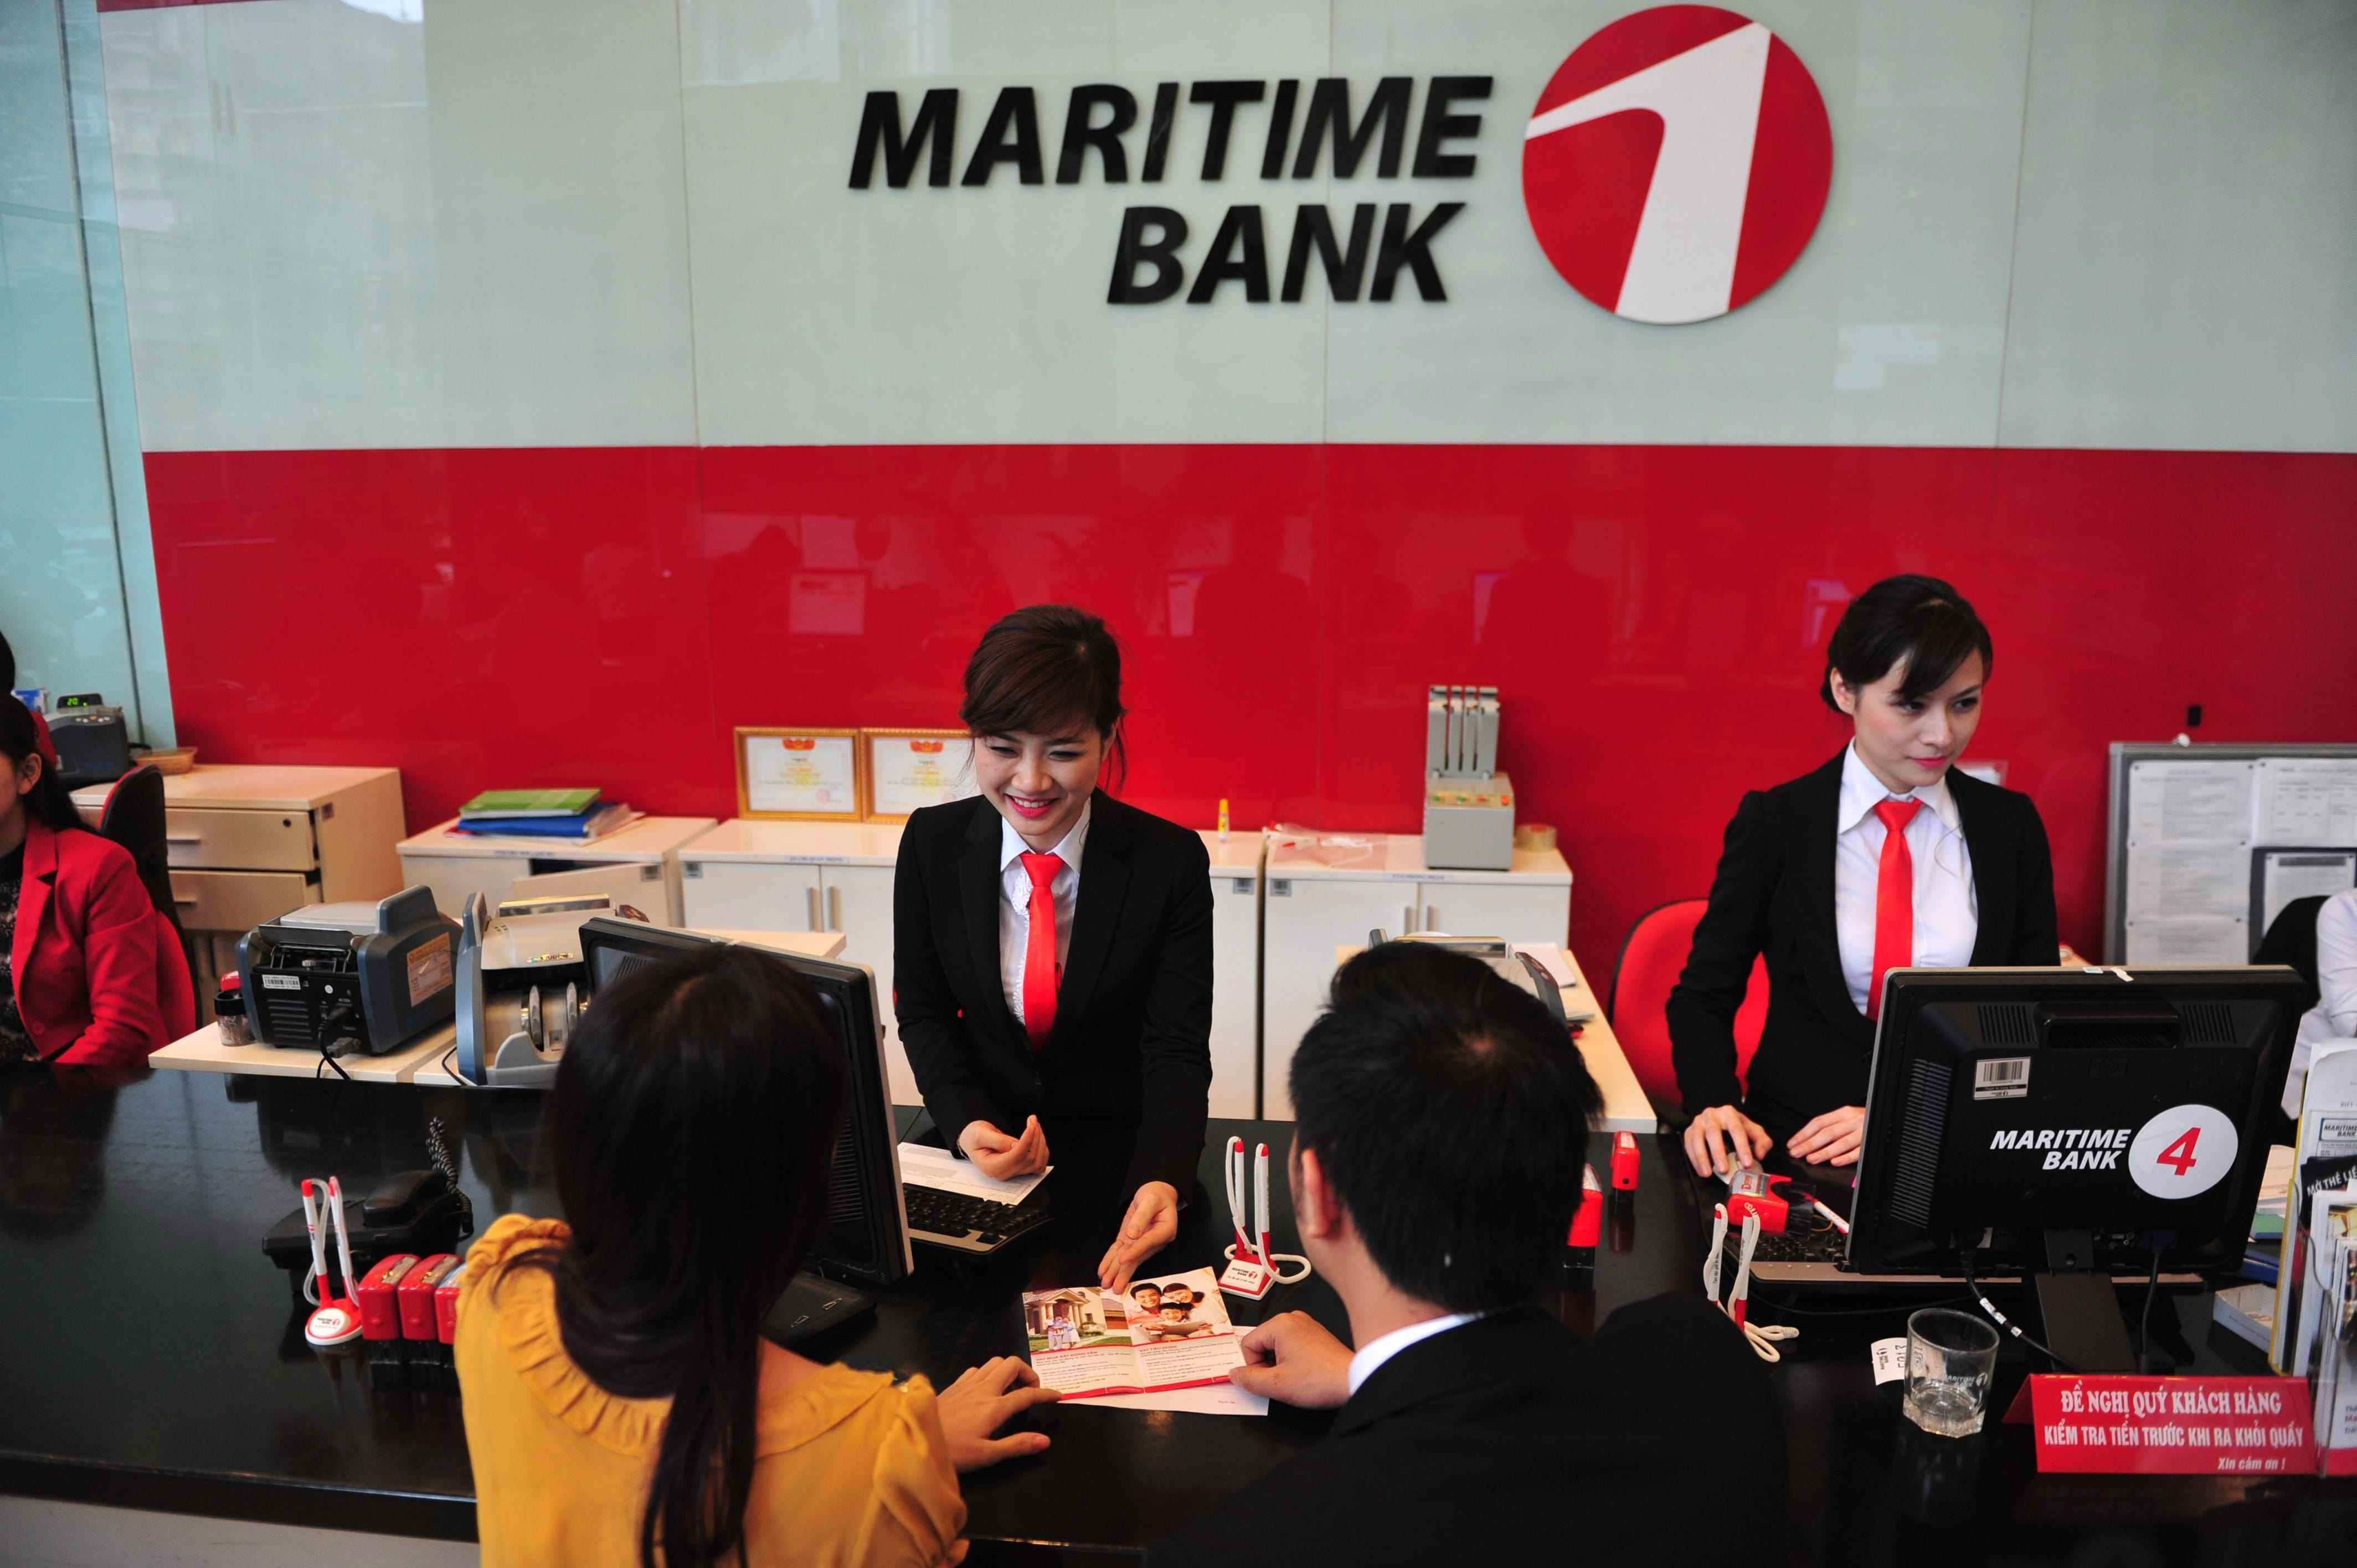 Vay tiêu dùng Maritime Bank - Giải pháp tài chính hiệu quả